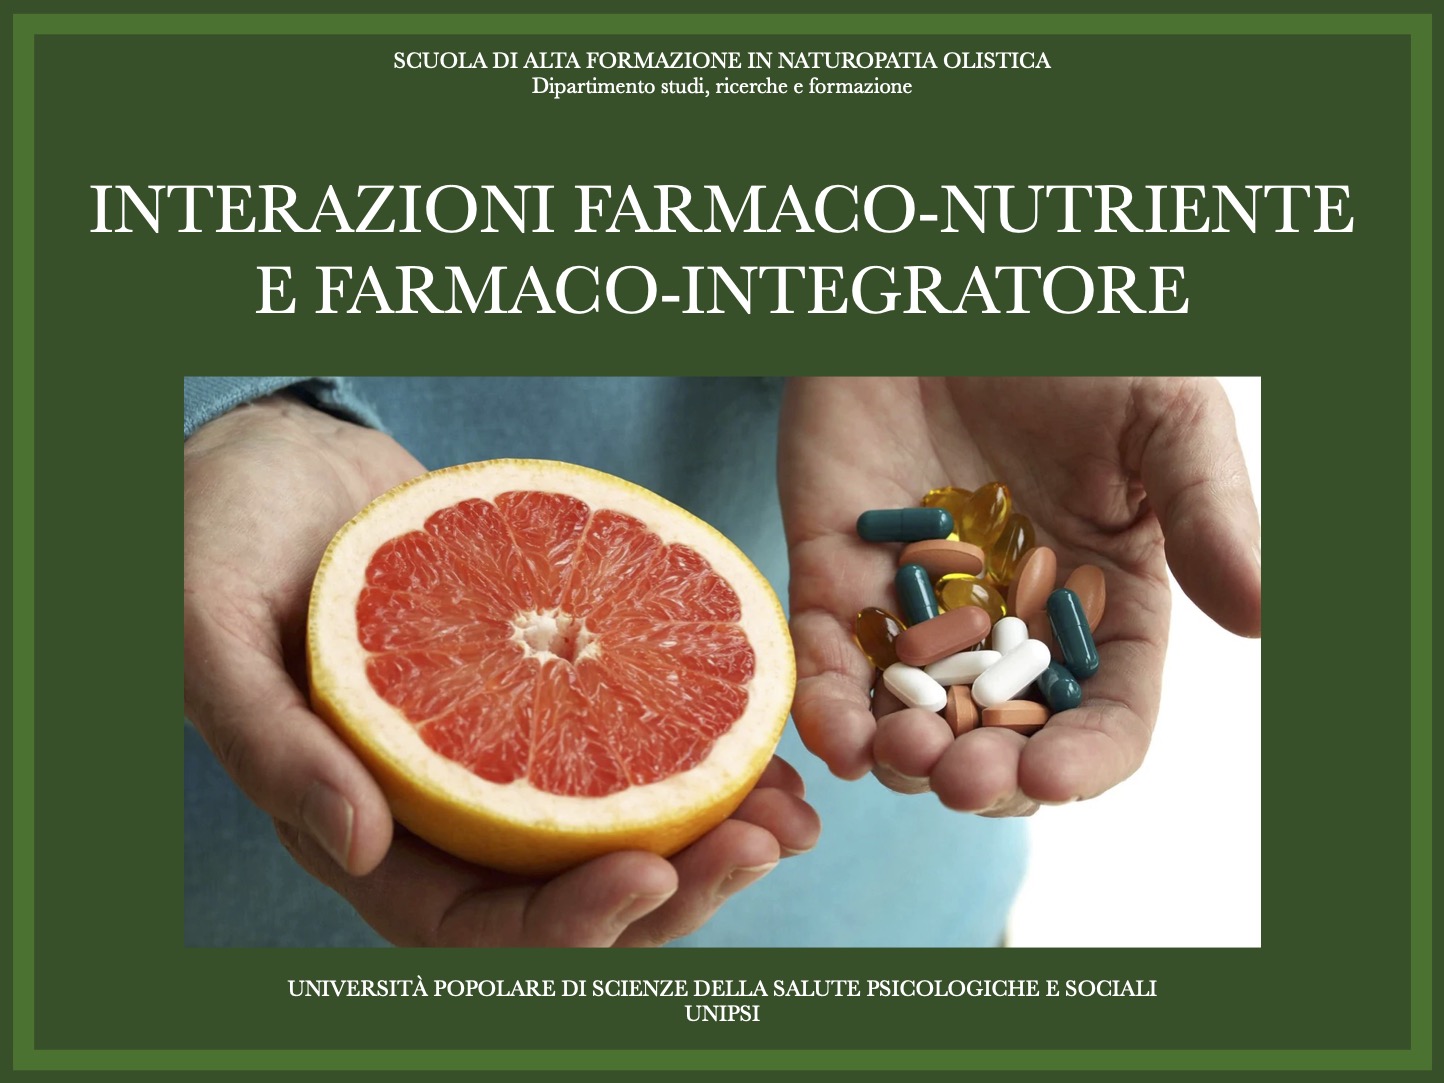 INTERAZIONI FARMACO-NUTRIENTE E FARMACO-INTEGRATORE: PRECAUZIONI D’USO E AVVERTENZE